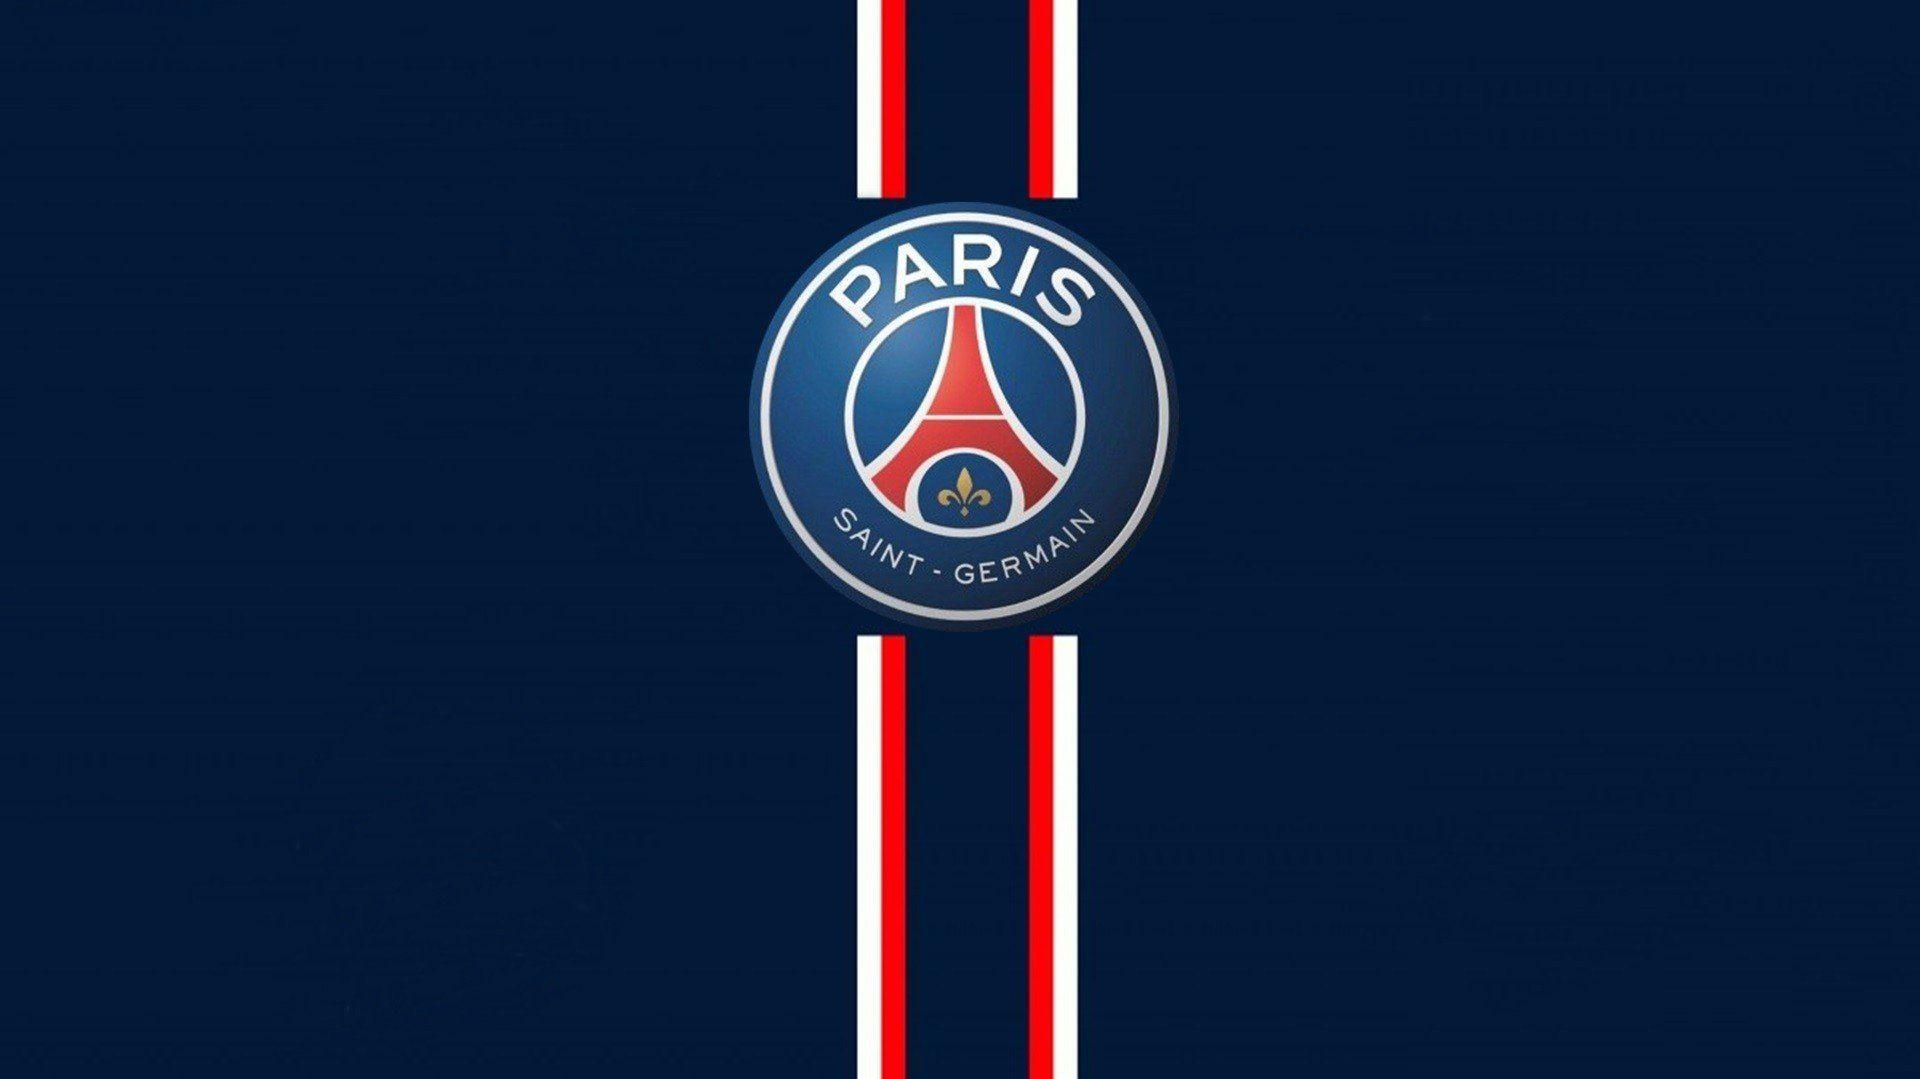 Paris Saint Germain Soccer Logo wallpaper 2018 in Soccer